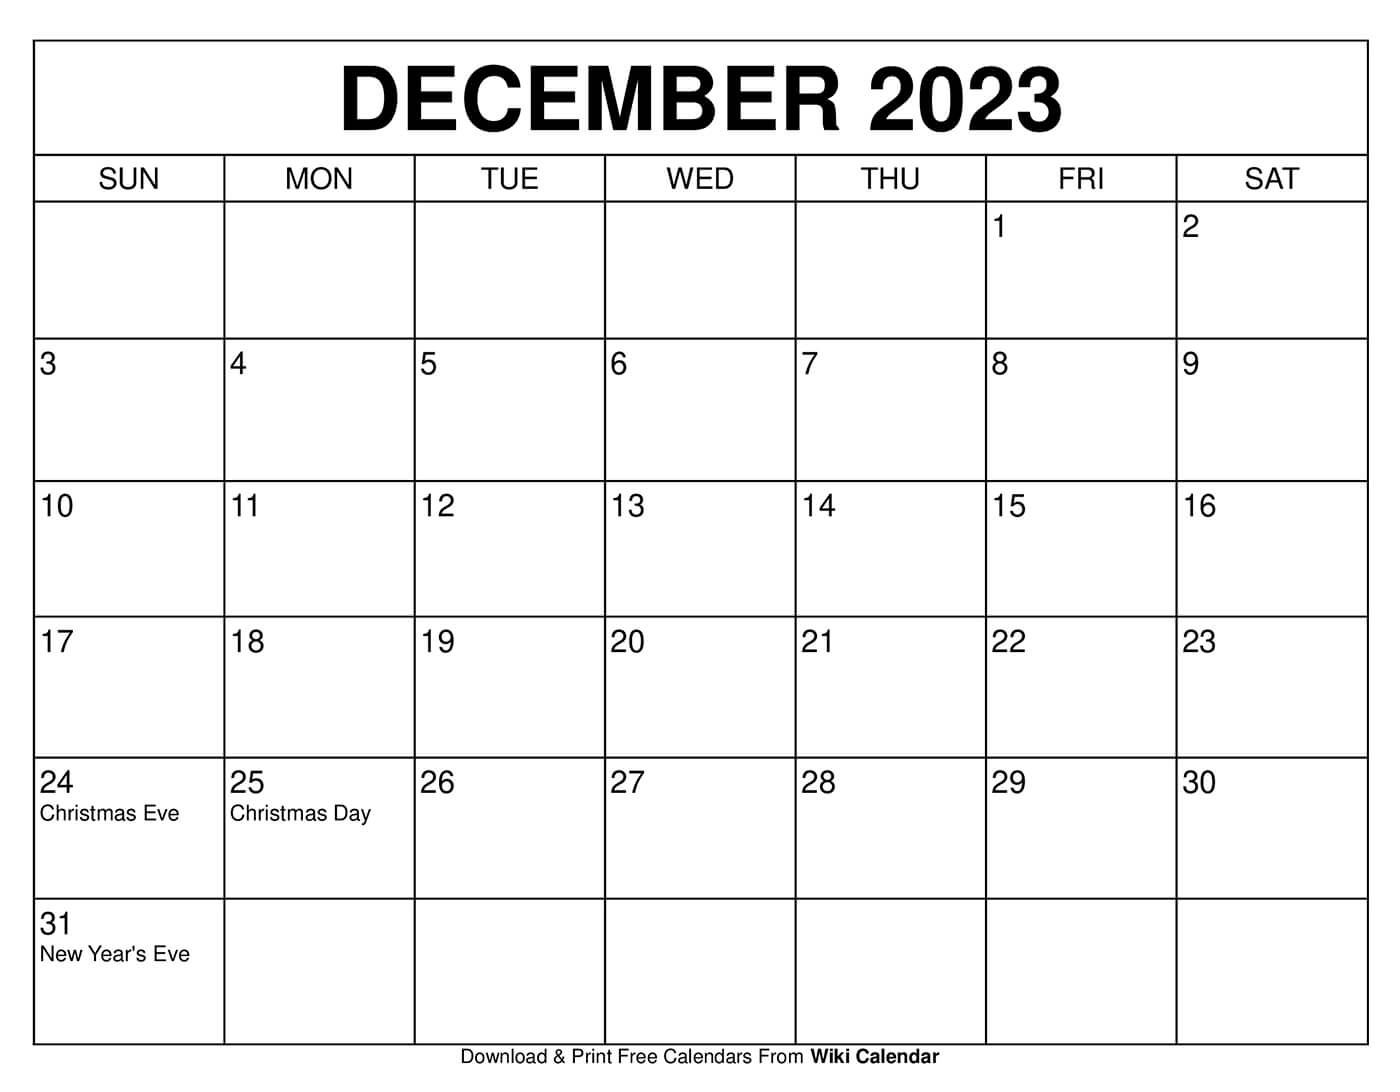 december-2023-calendar-downloadable-get-latest-map-update